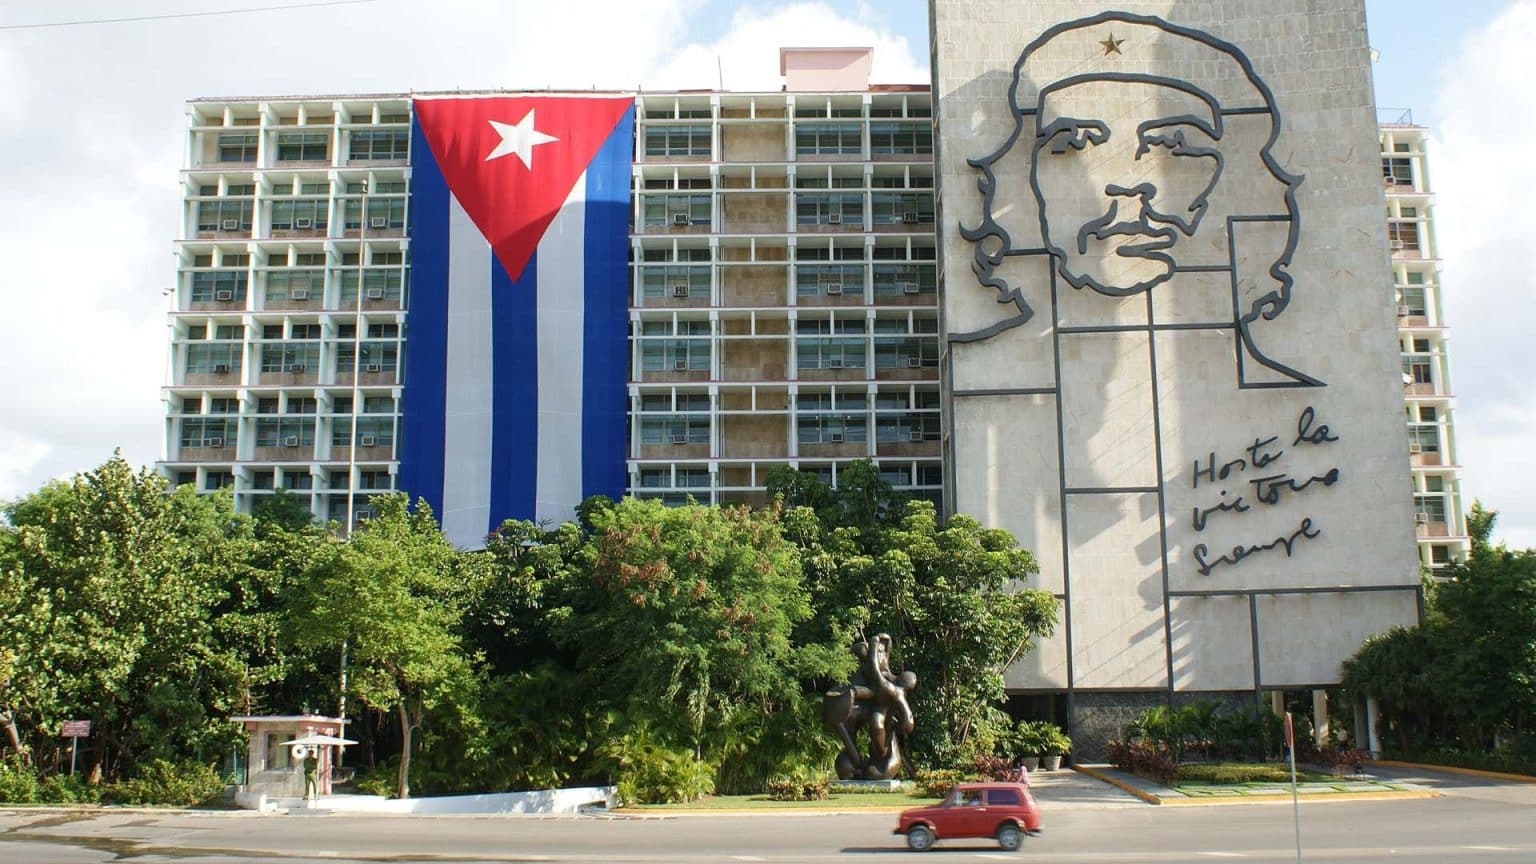 Revolution Square Cuba. File photo.